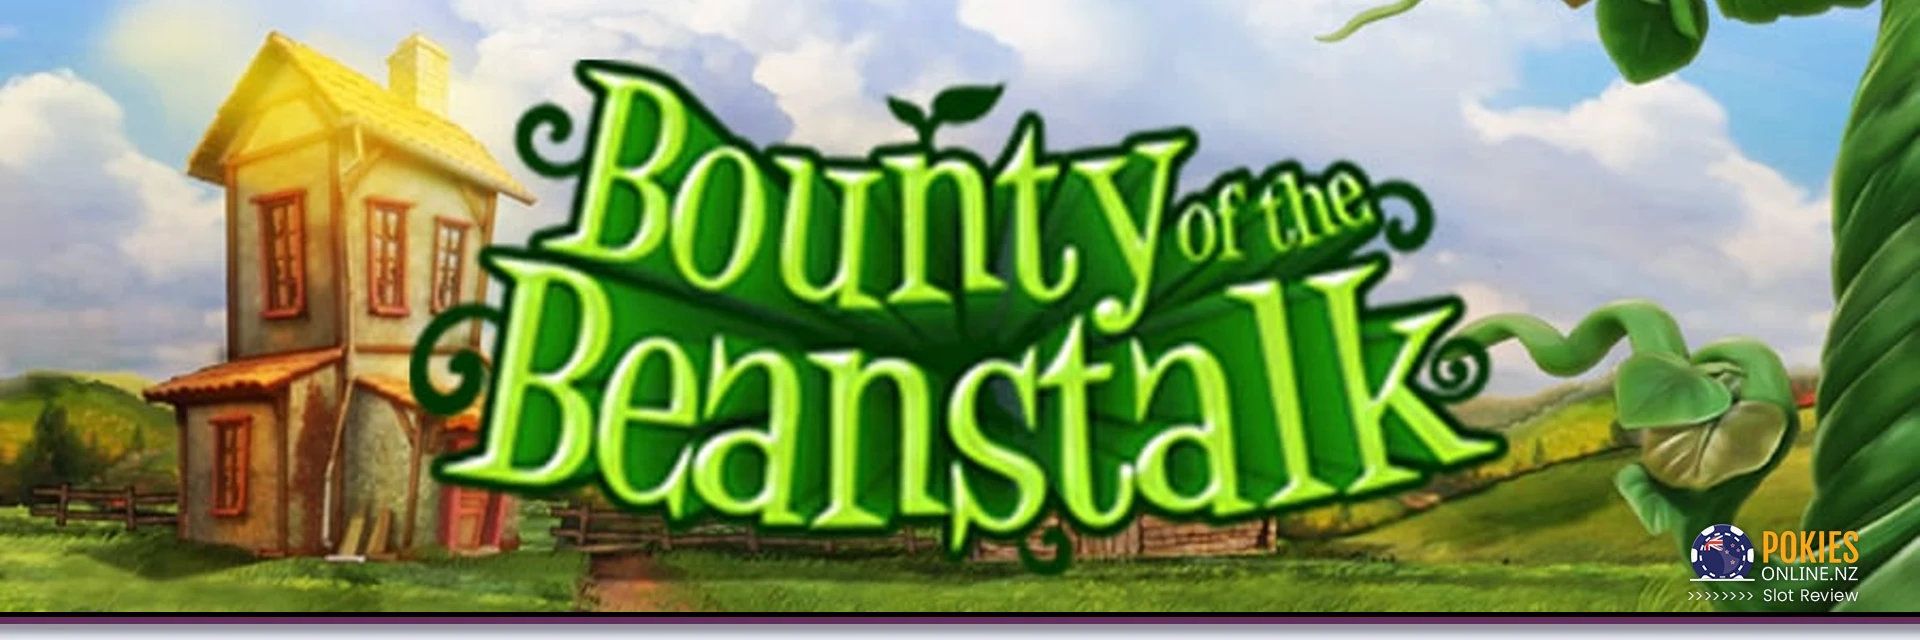 Bounty of the beanstalk slot banner